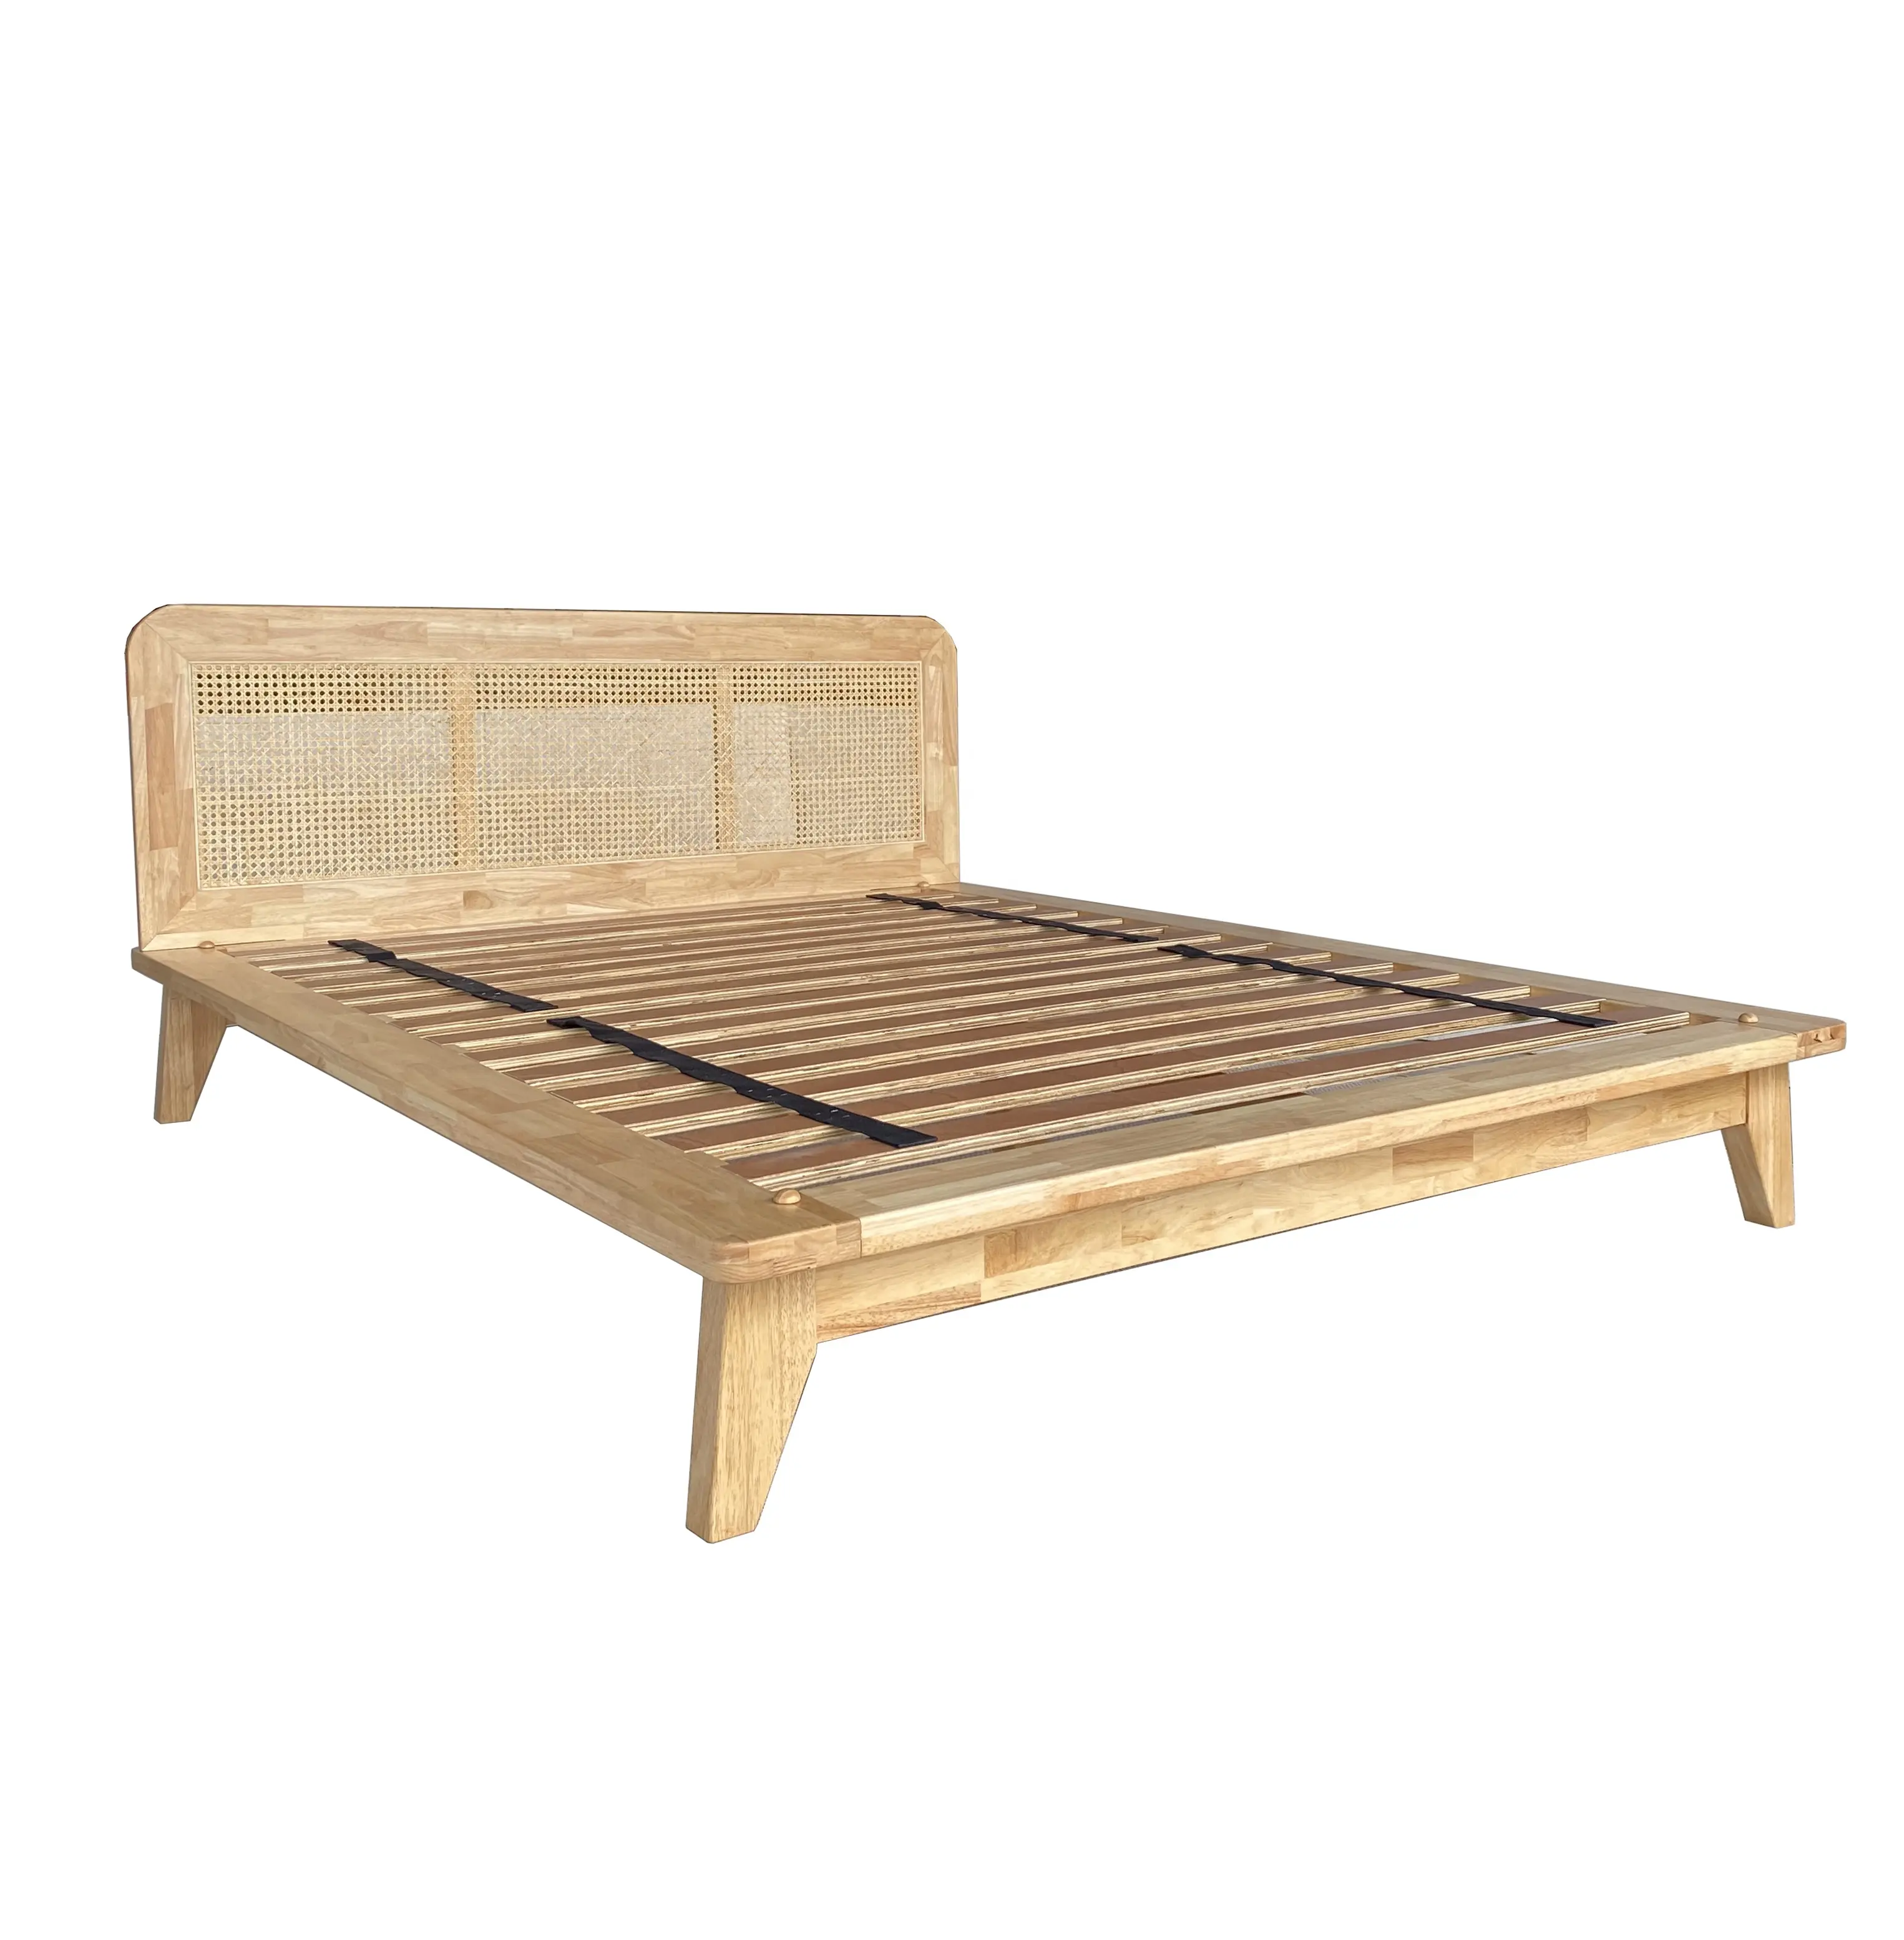 Vietnam'da yapılan üstün işçilik Modern mobilya katı kauçuk ahşap yatak montajı için hiçbir araç gerekli